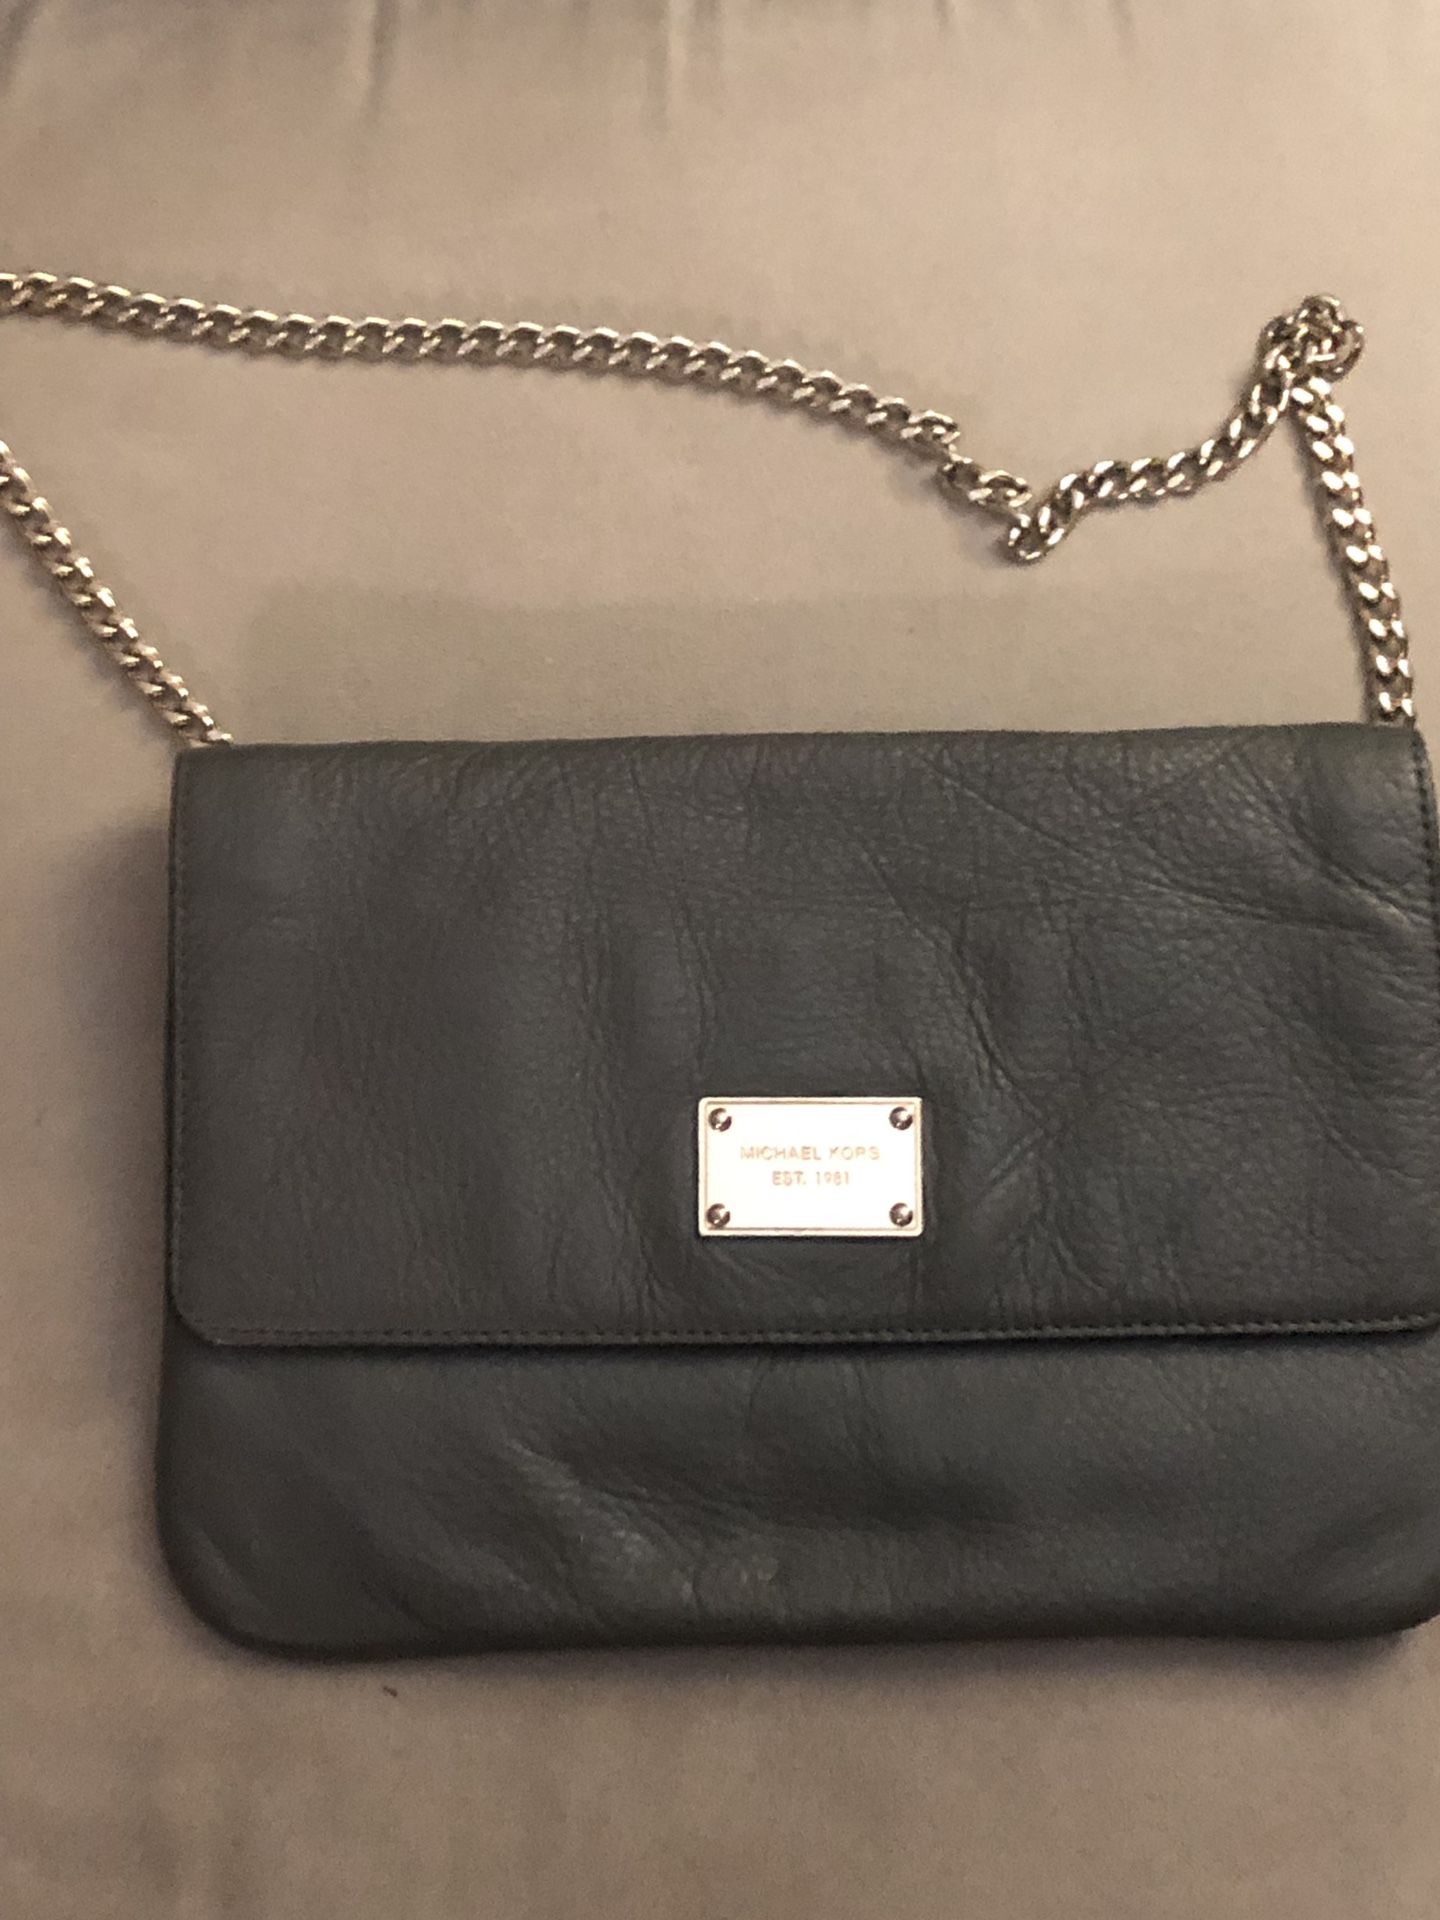 Michael Kors versatile clutch or handbag